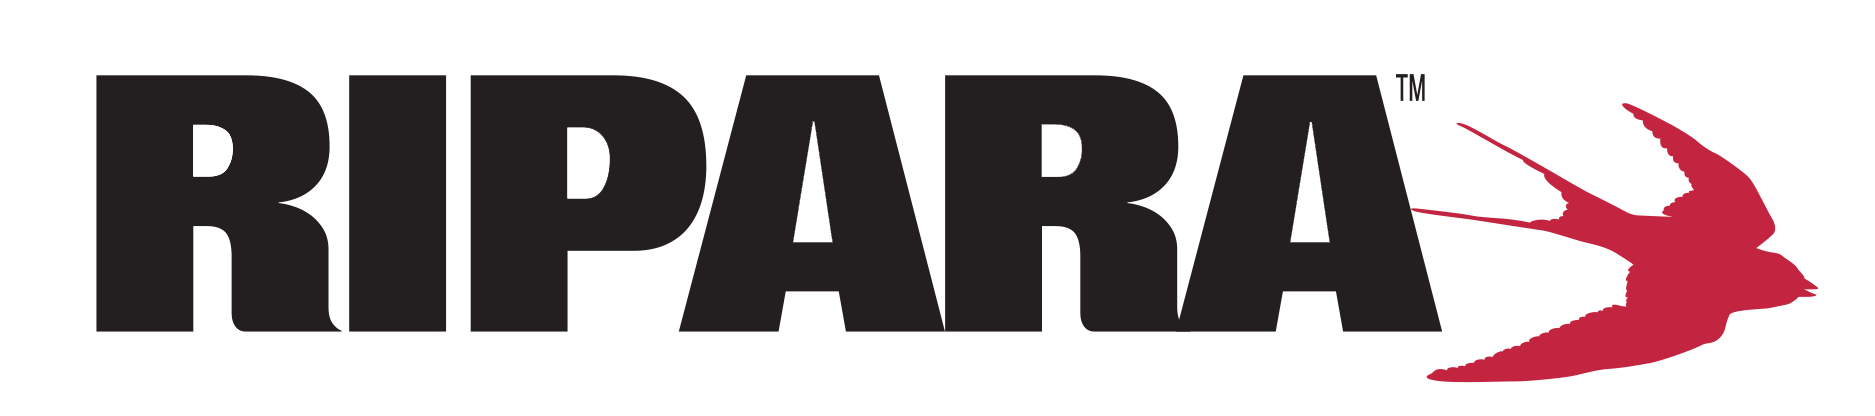 Ripara-Logo-Final